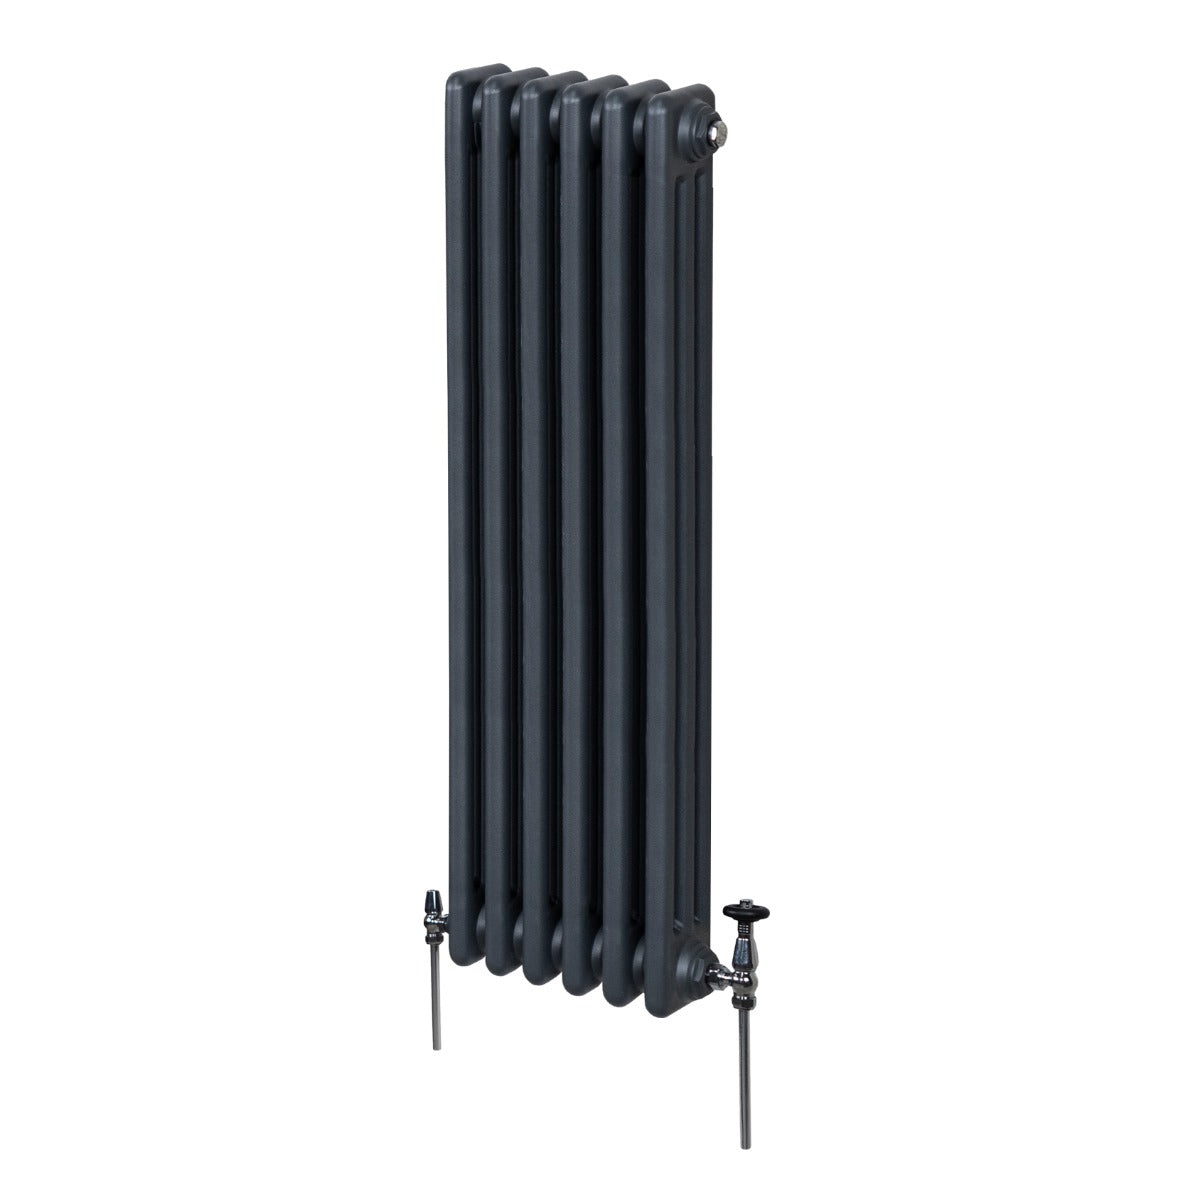 Termosifone Radiatore a 3 colonne per riscaldamento centralizzato verticale Grigio antracite 150x29cm